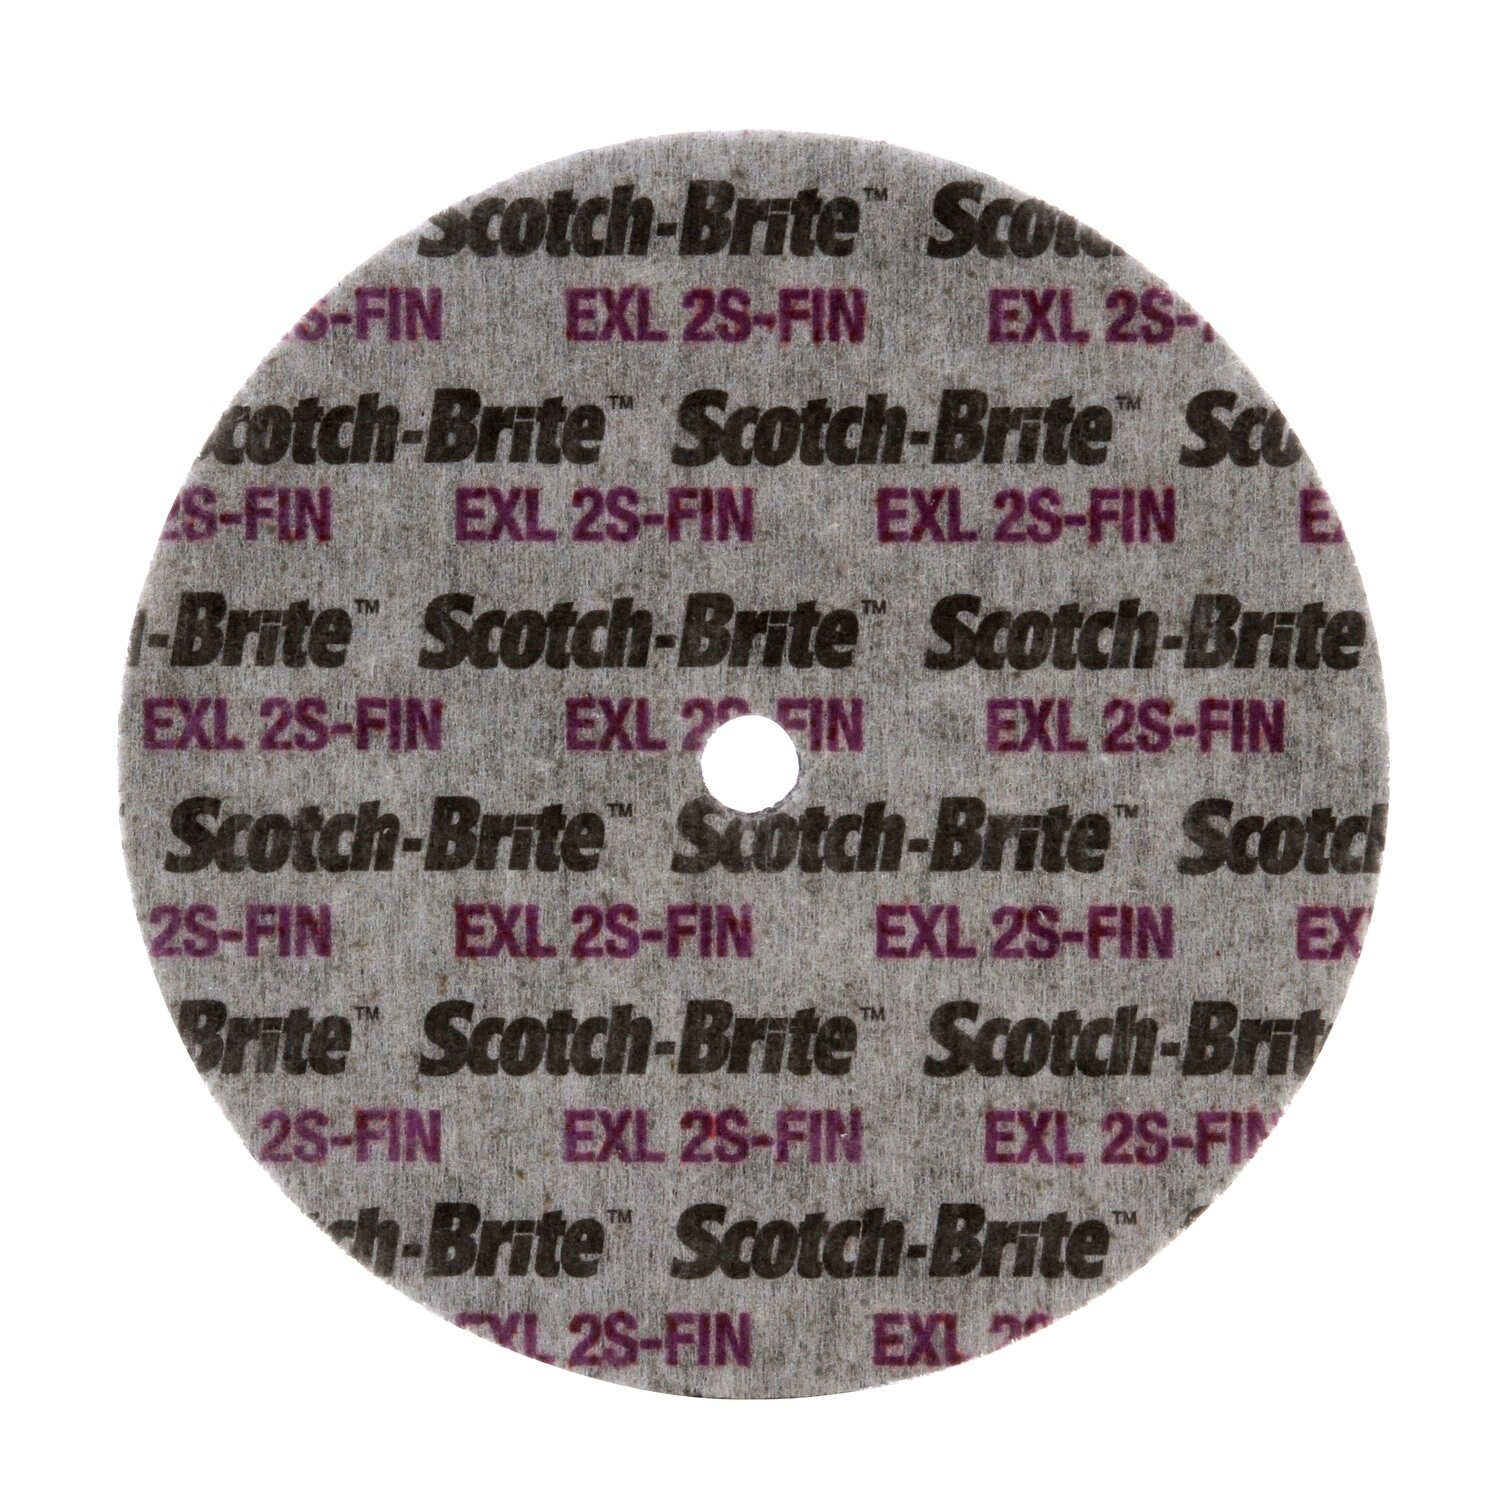 7010534363 - Scotch-Brite EXL Deburring Convolute Wheel, XL-WL, 8S Fine, 6 in x 1/4
in x 1 in